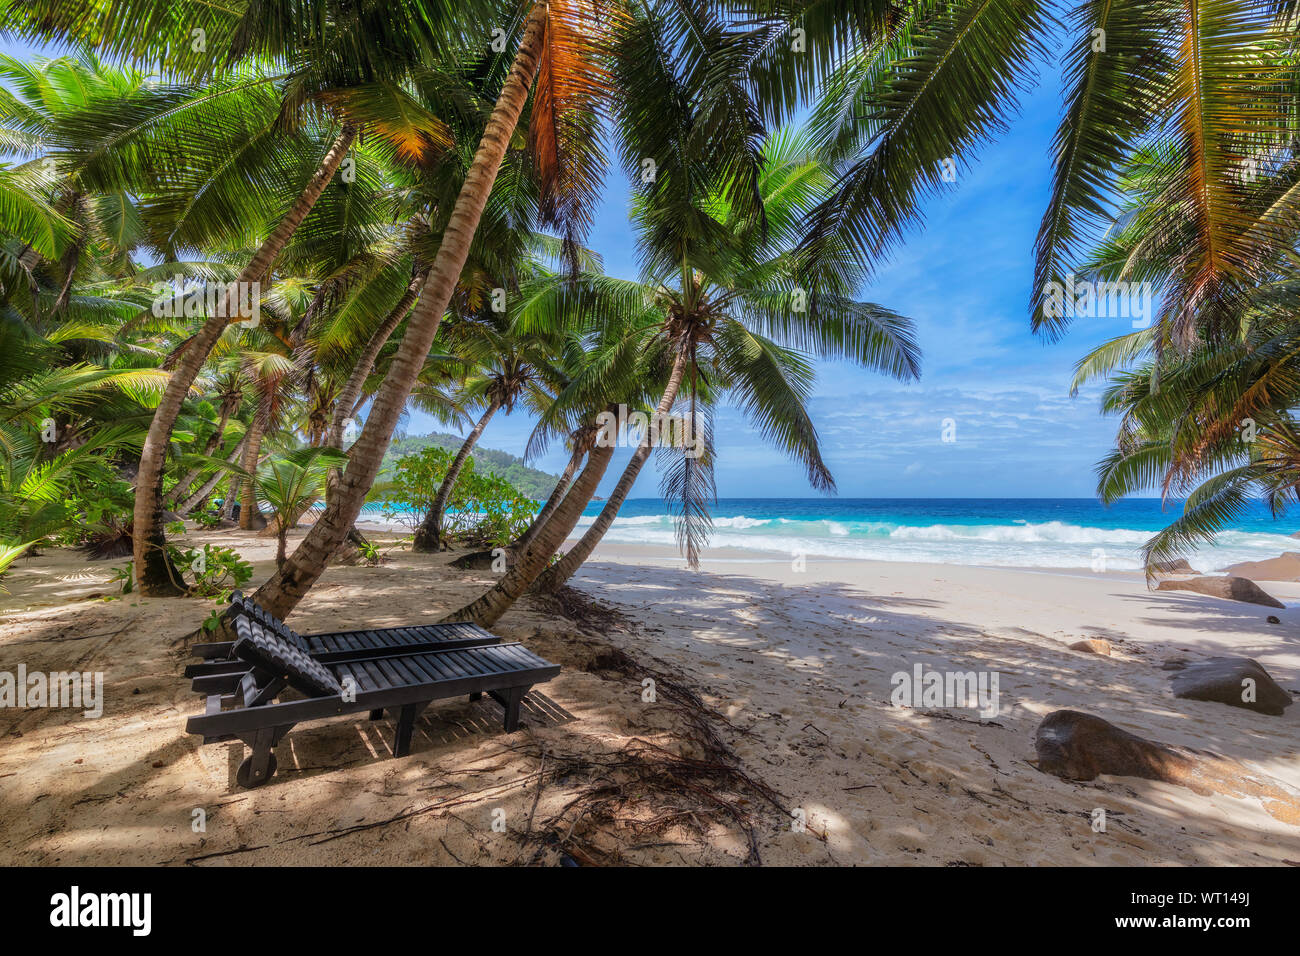 Esotica spiaggia con sdraio in spiaggia, di sabbia bianca e mare tropicale sull'isola di paradiso. Foto Stock